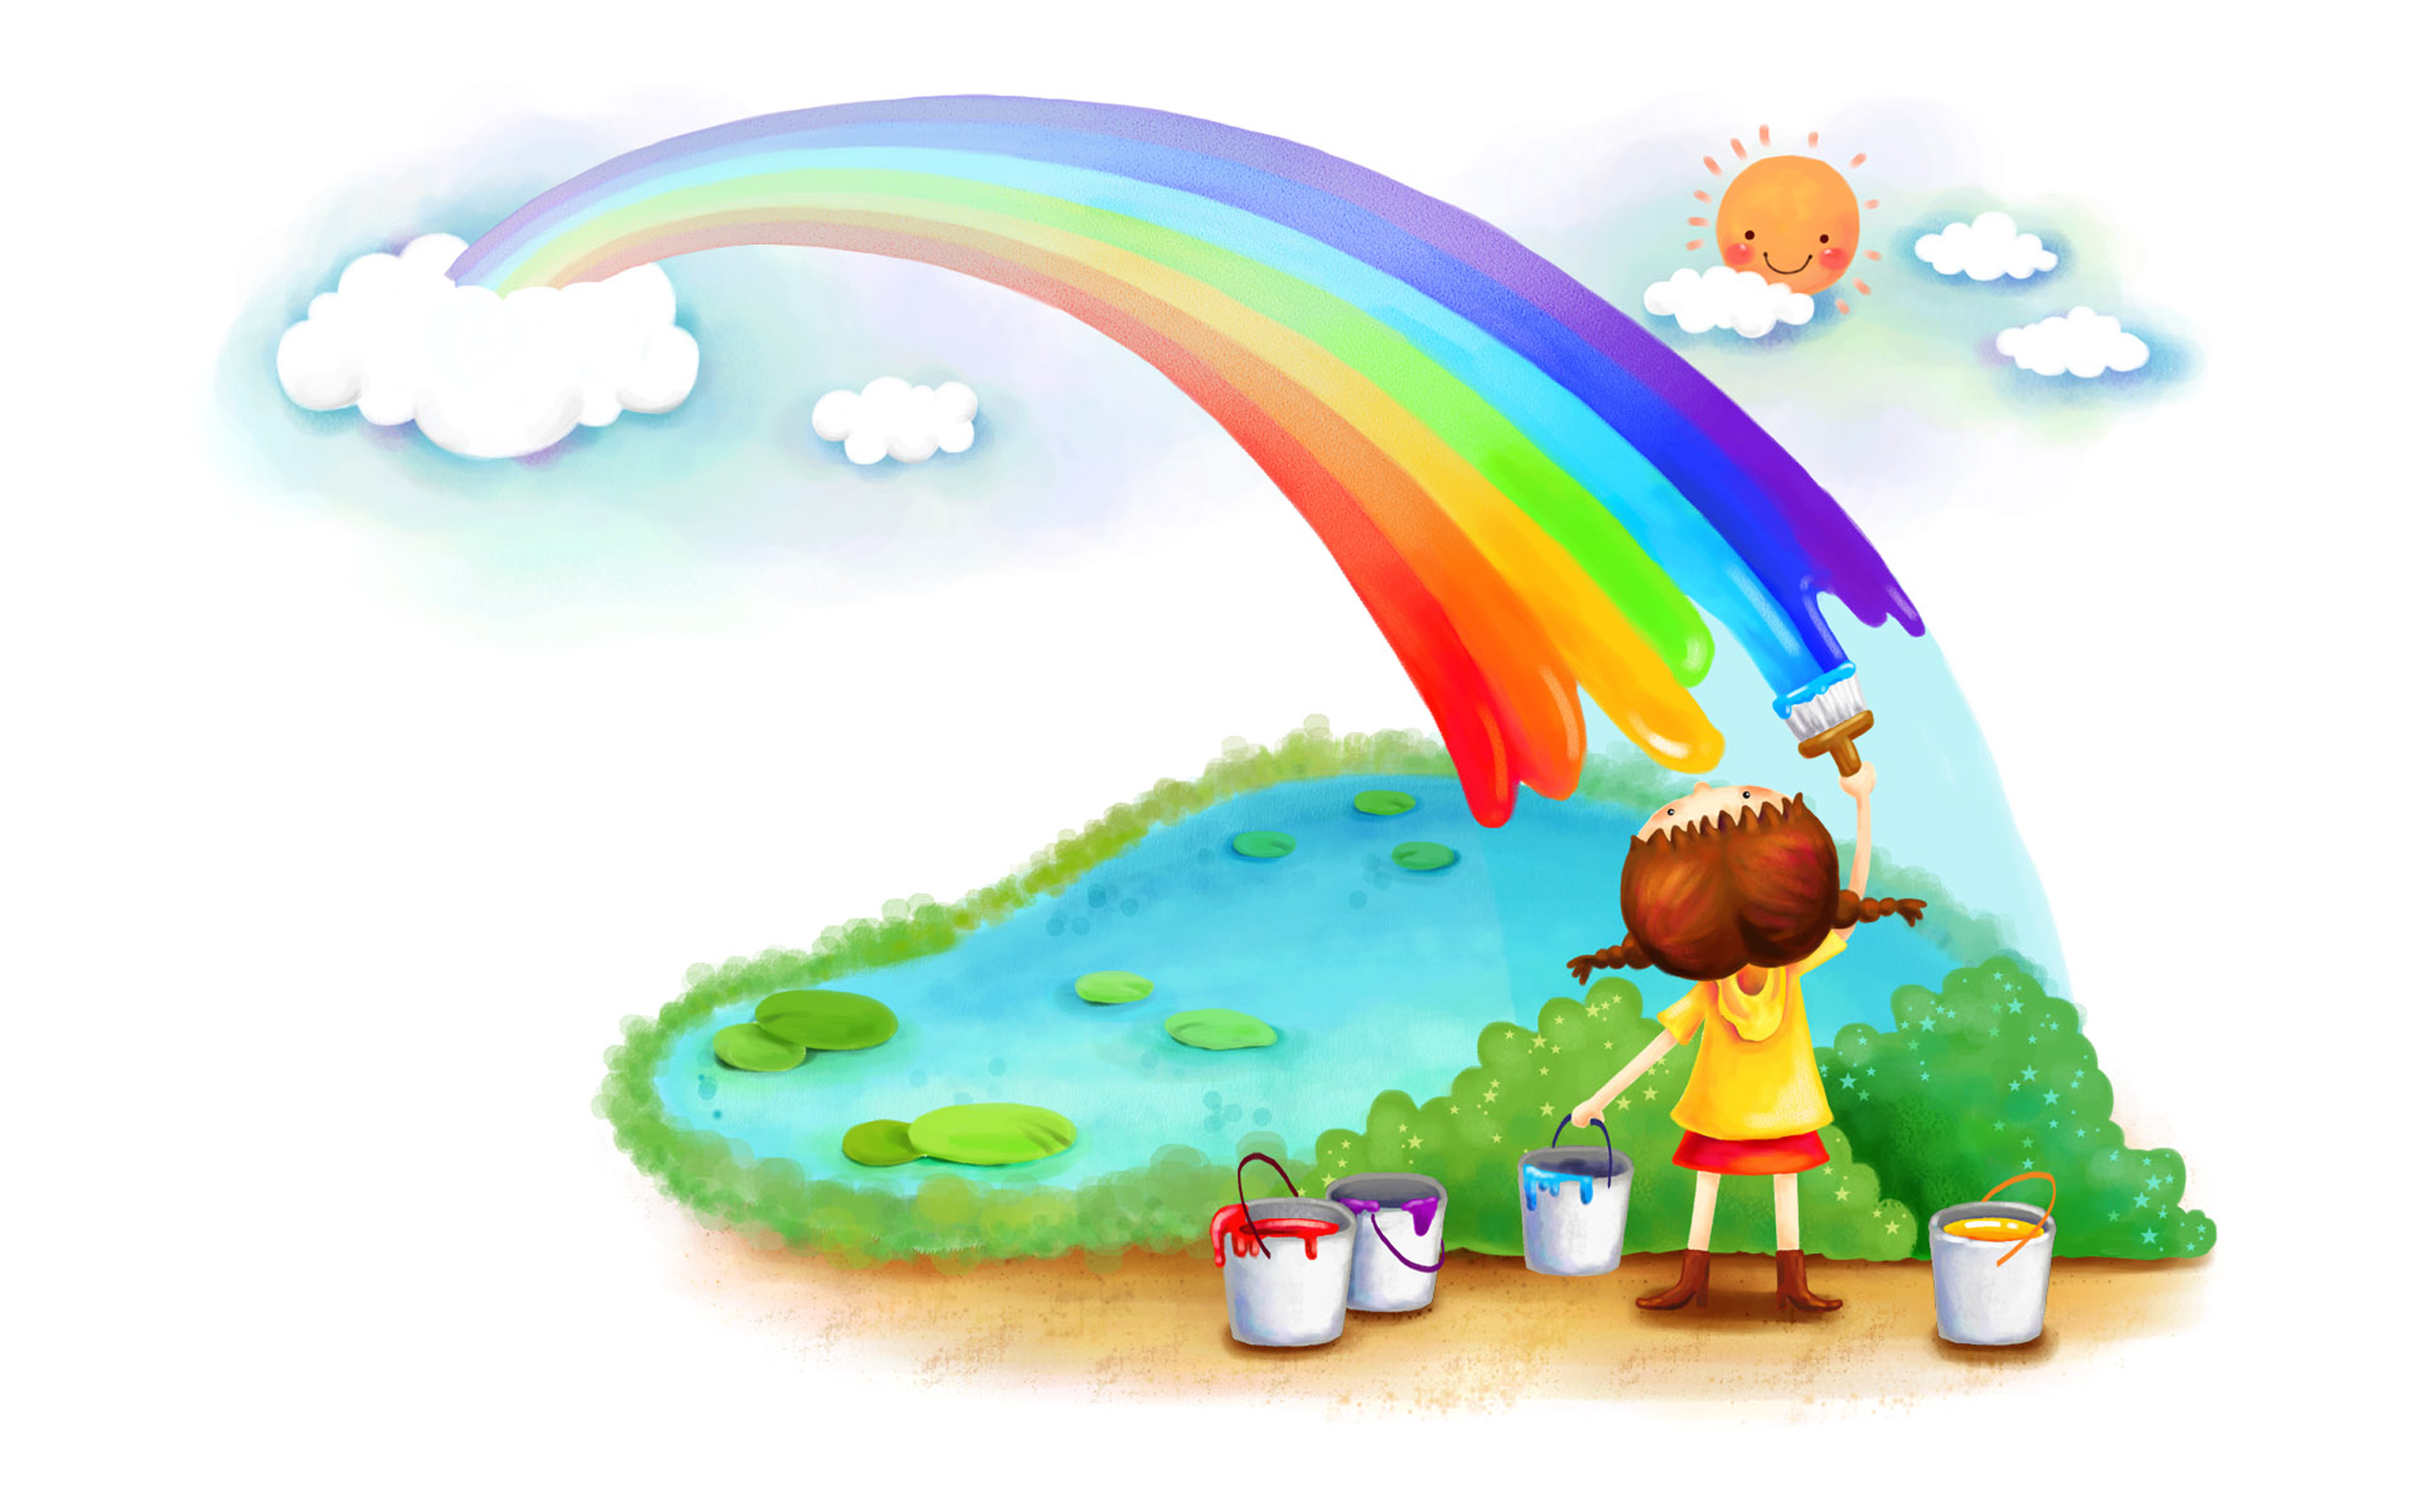 Painting A Rainbow Puter Desktop Wallpaper